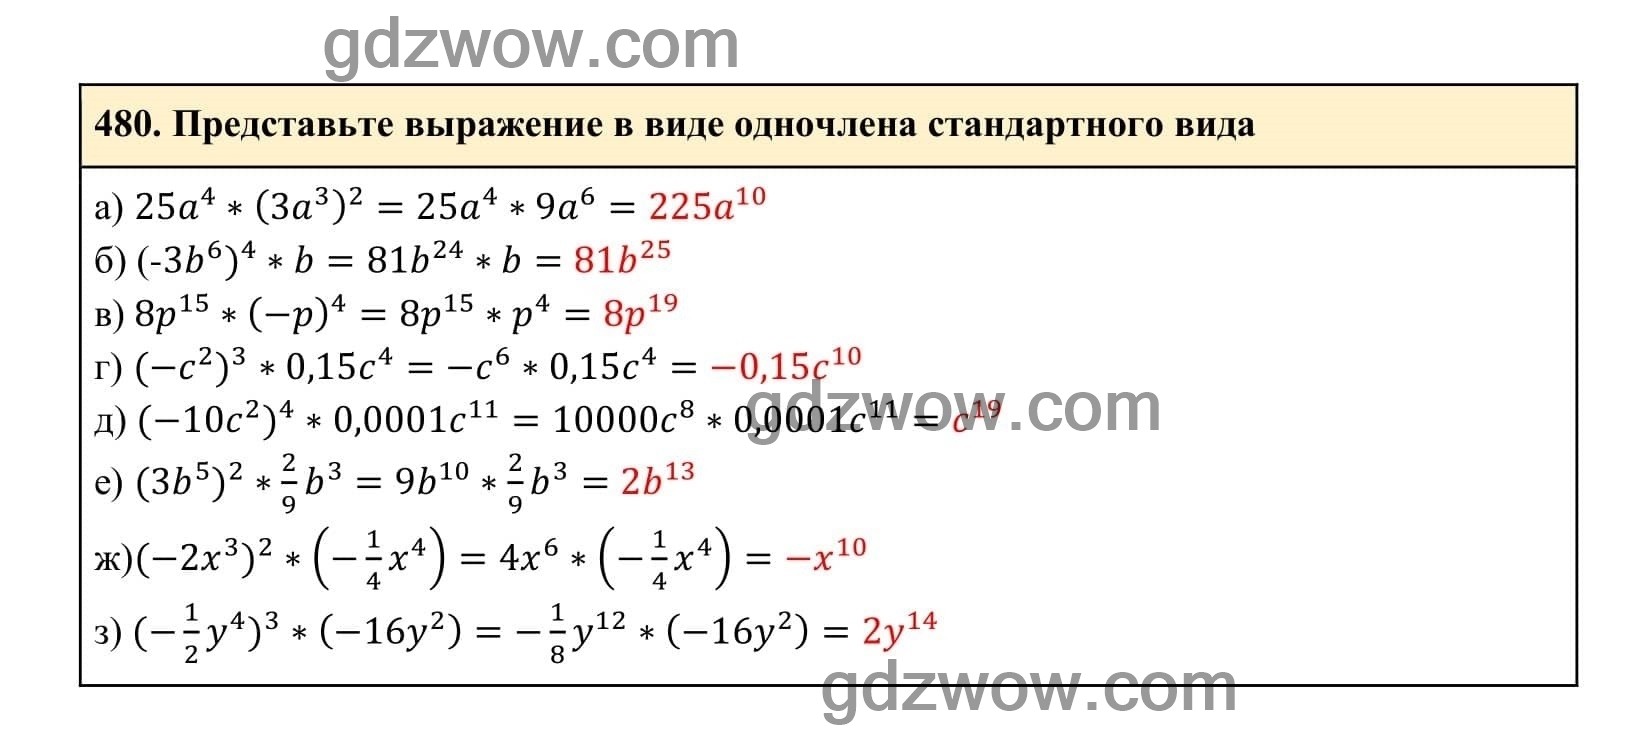 Упражнение 480 - ГДЗ по Алгебре 7 класс Учебник Макарычев (решебник) - GDZwow